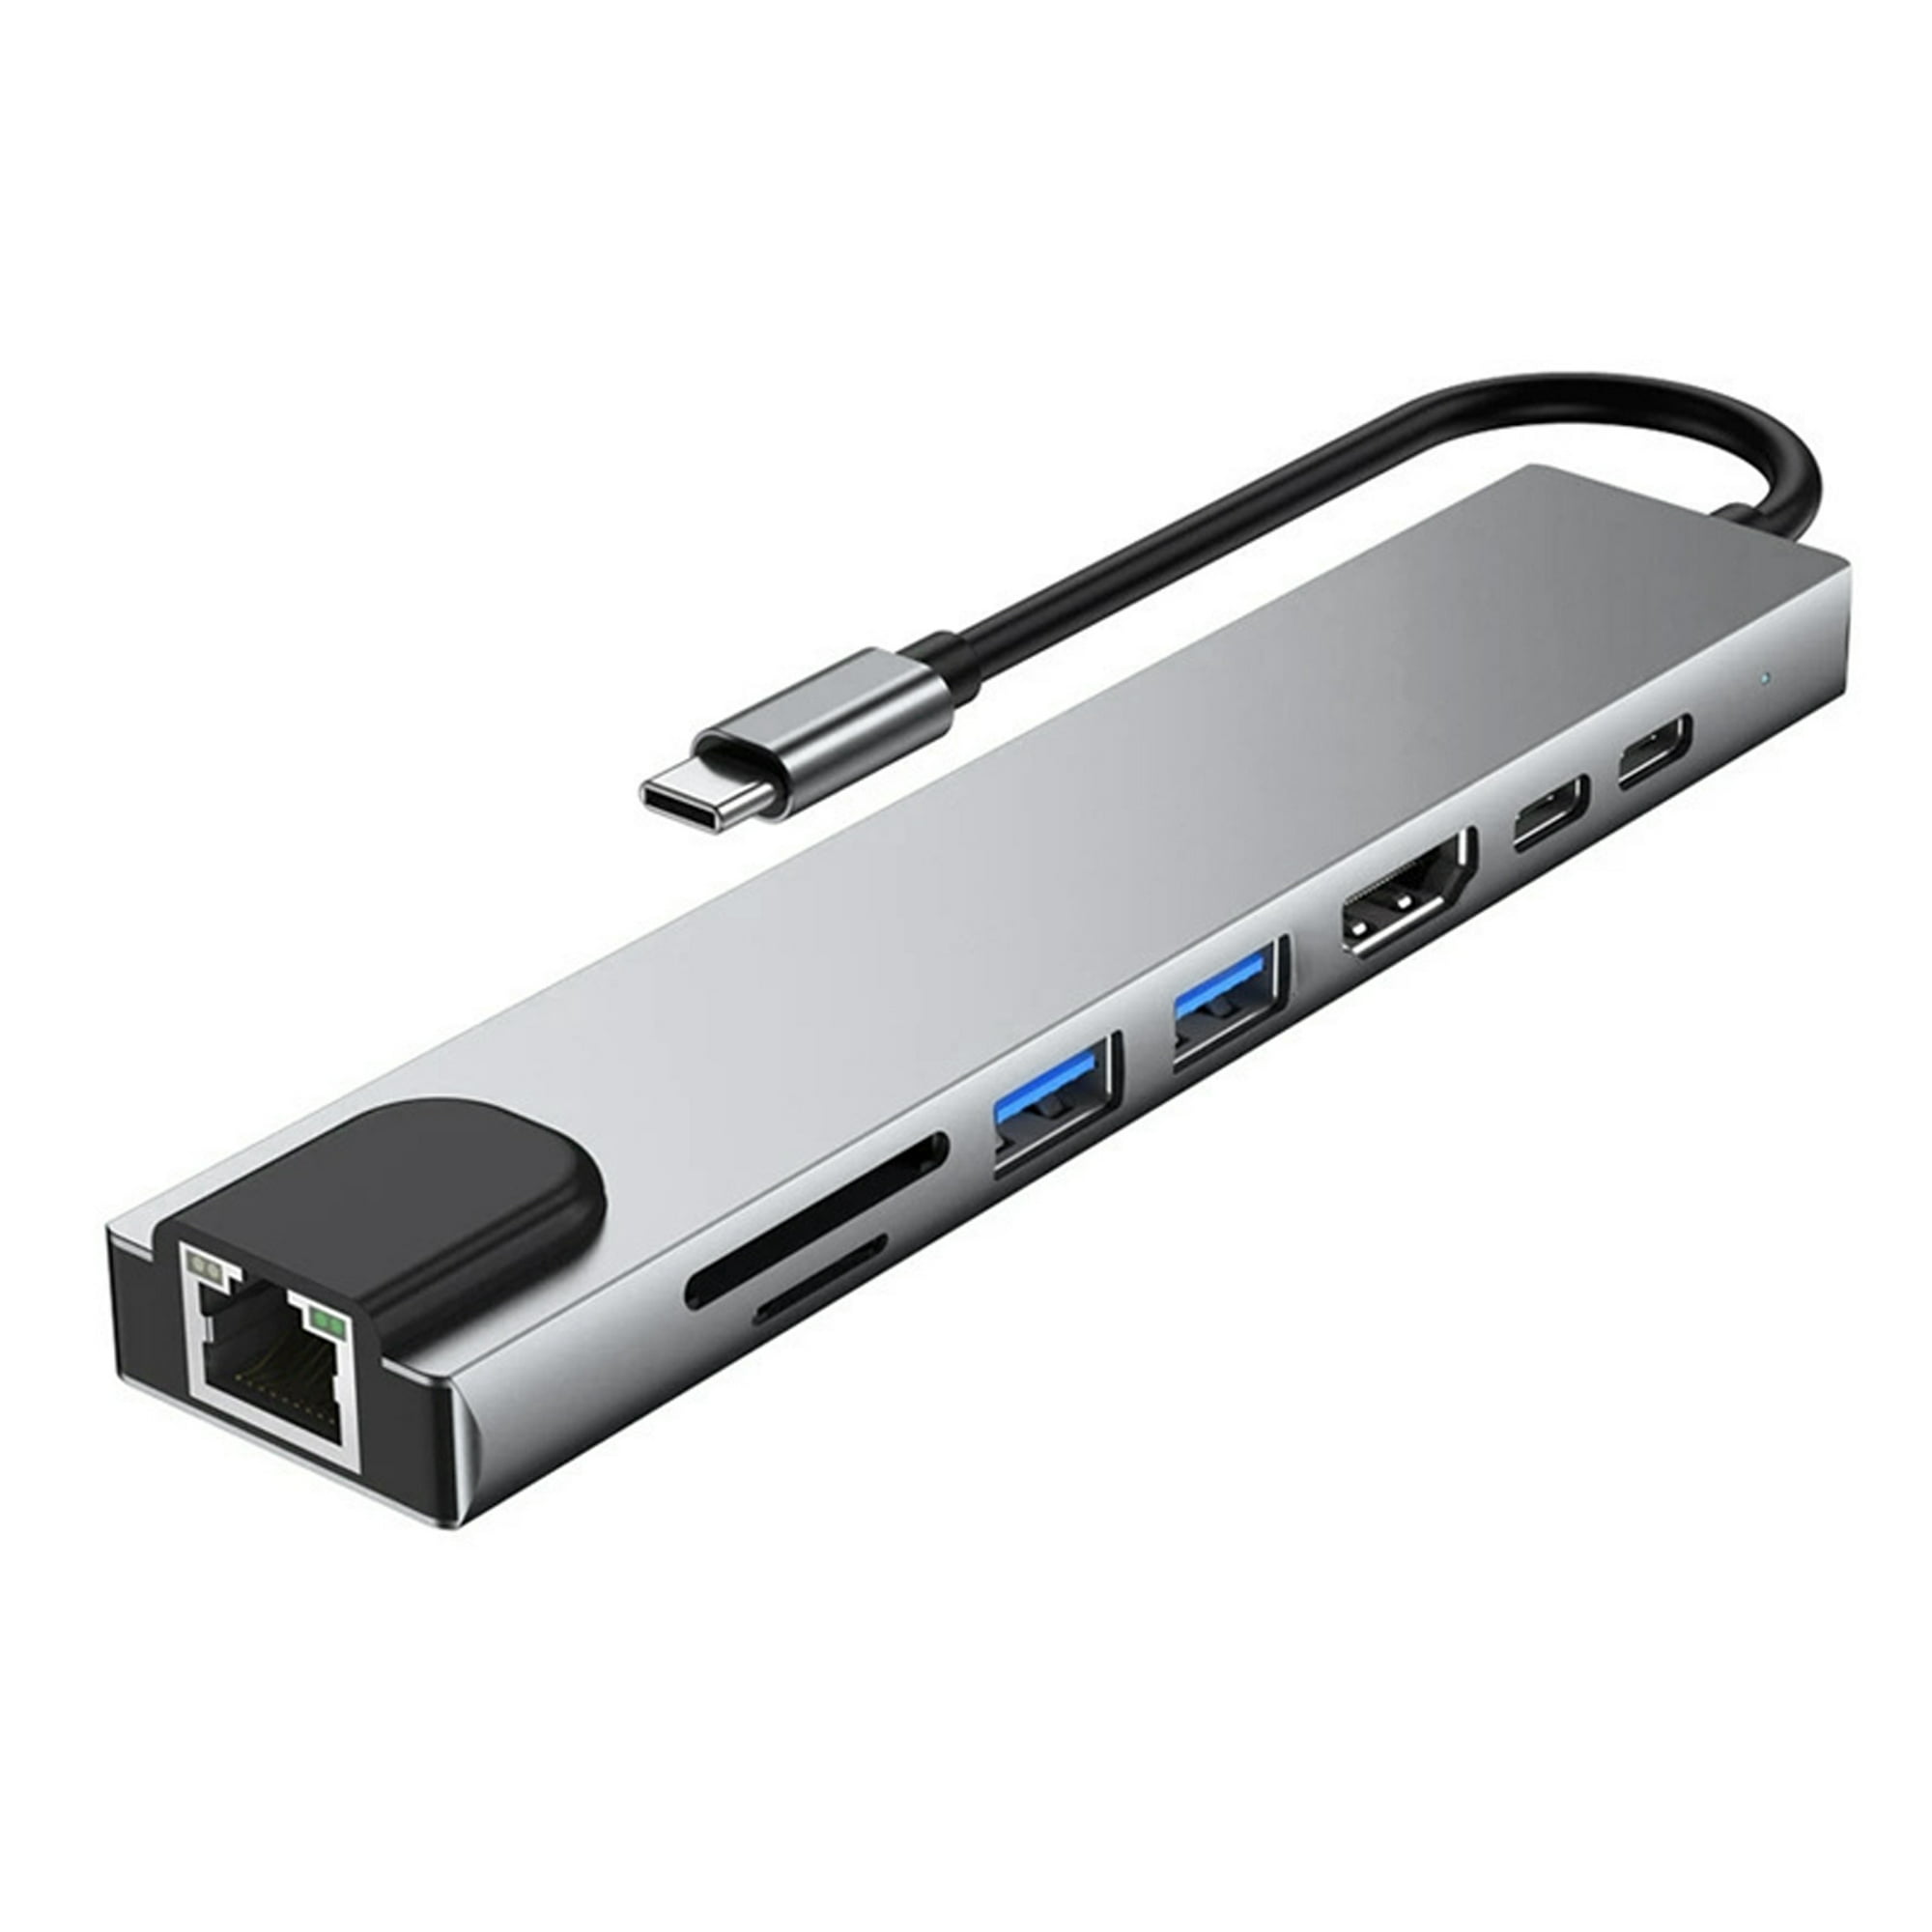 Adaptador multipuerto USB C Hub Ethernet, estación de acoplamiento USB C 8  en 1 4K HDMI, 100 W PD, 3 USB 3.0, 1 Gbps LAN USB C Dongle, lector SD/TF